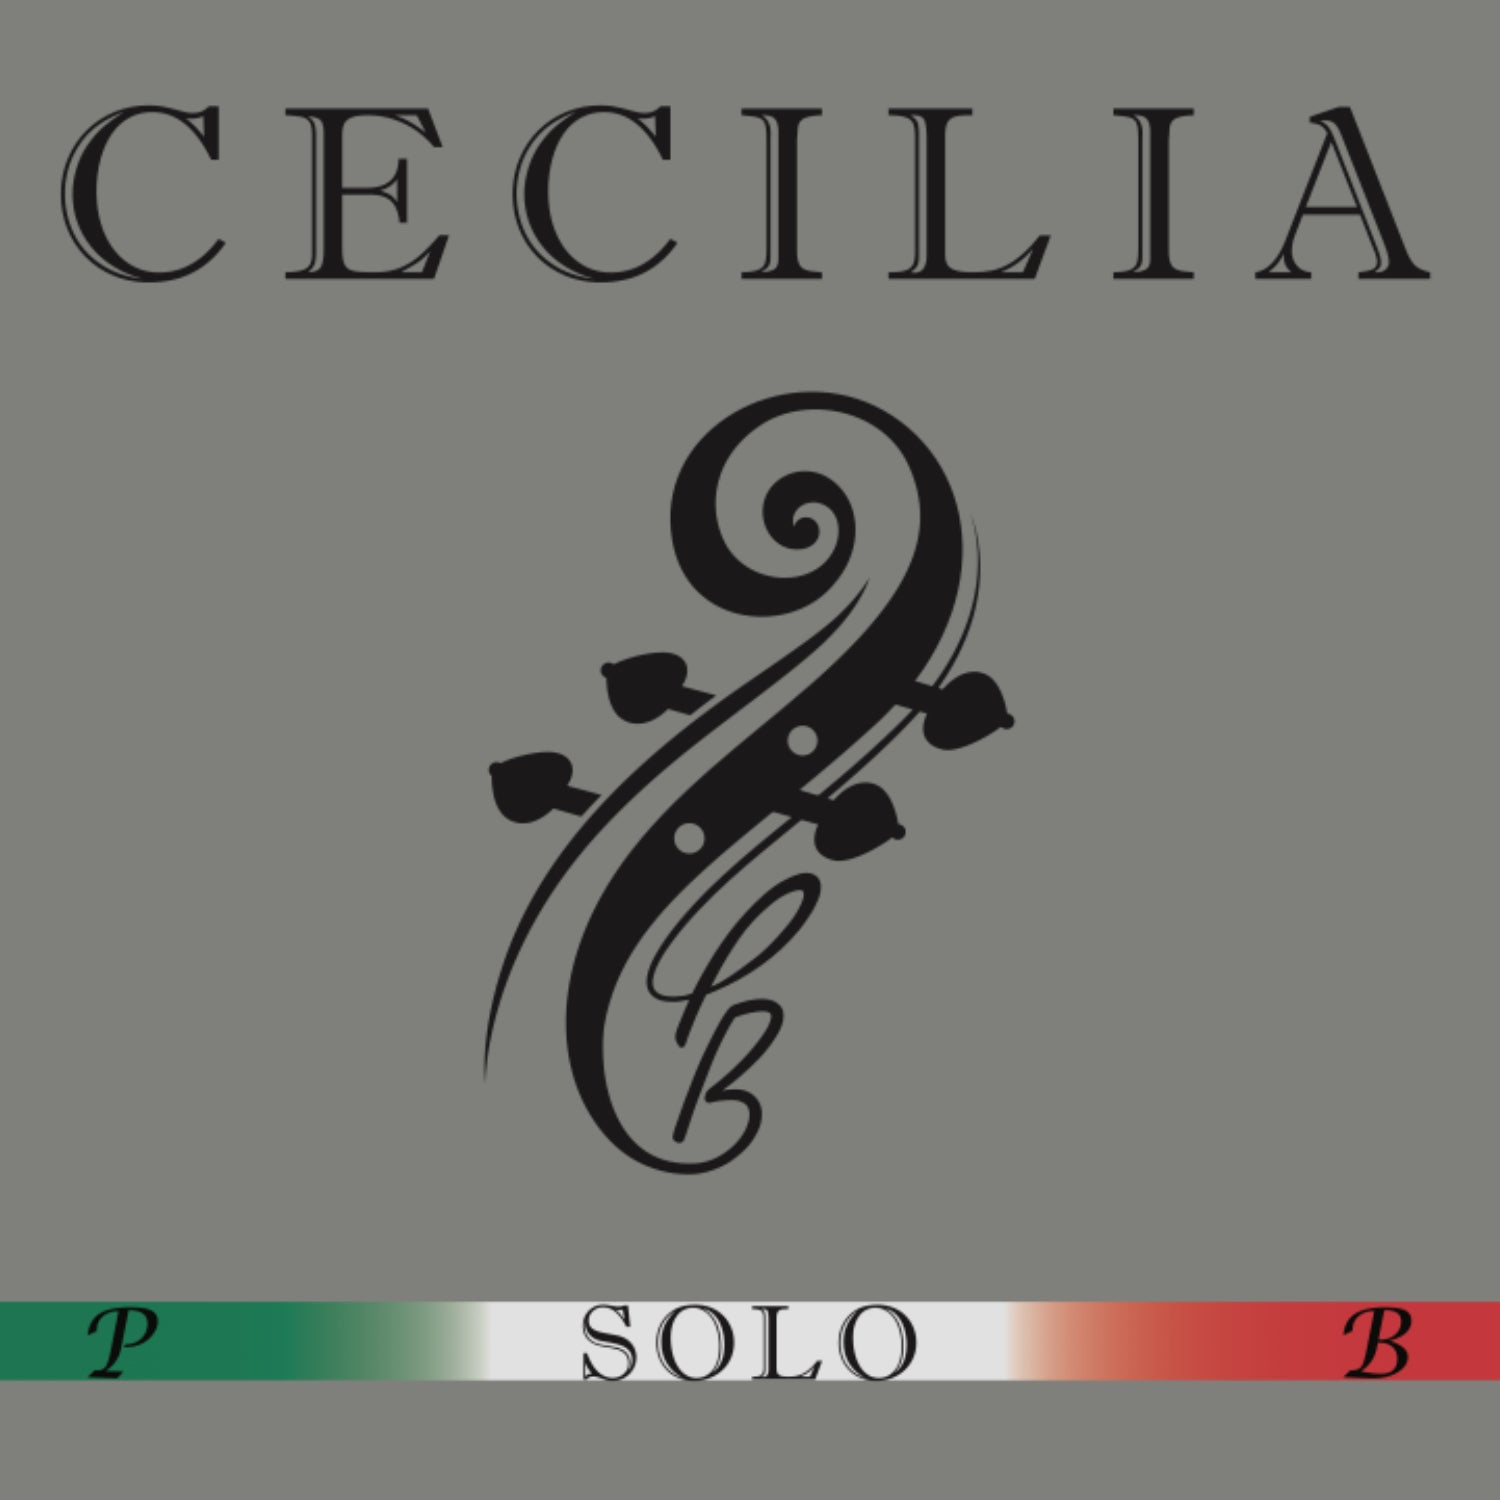 CECILIA SOLO Cello MINI with Spreader